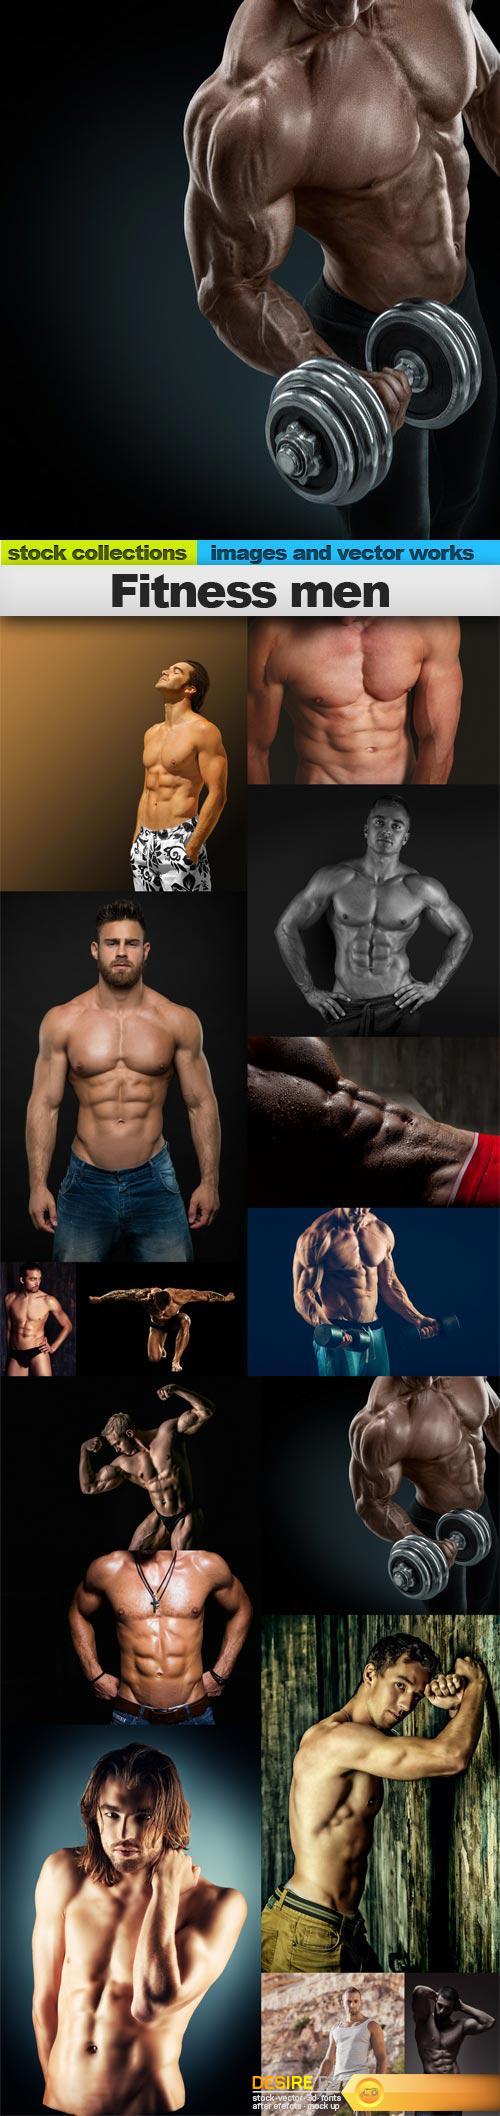 Fitness men, 15 x UHQ JPEG